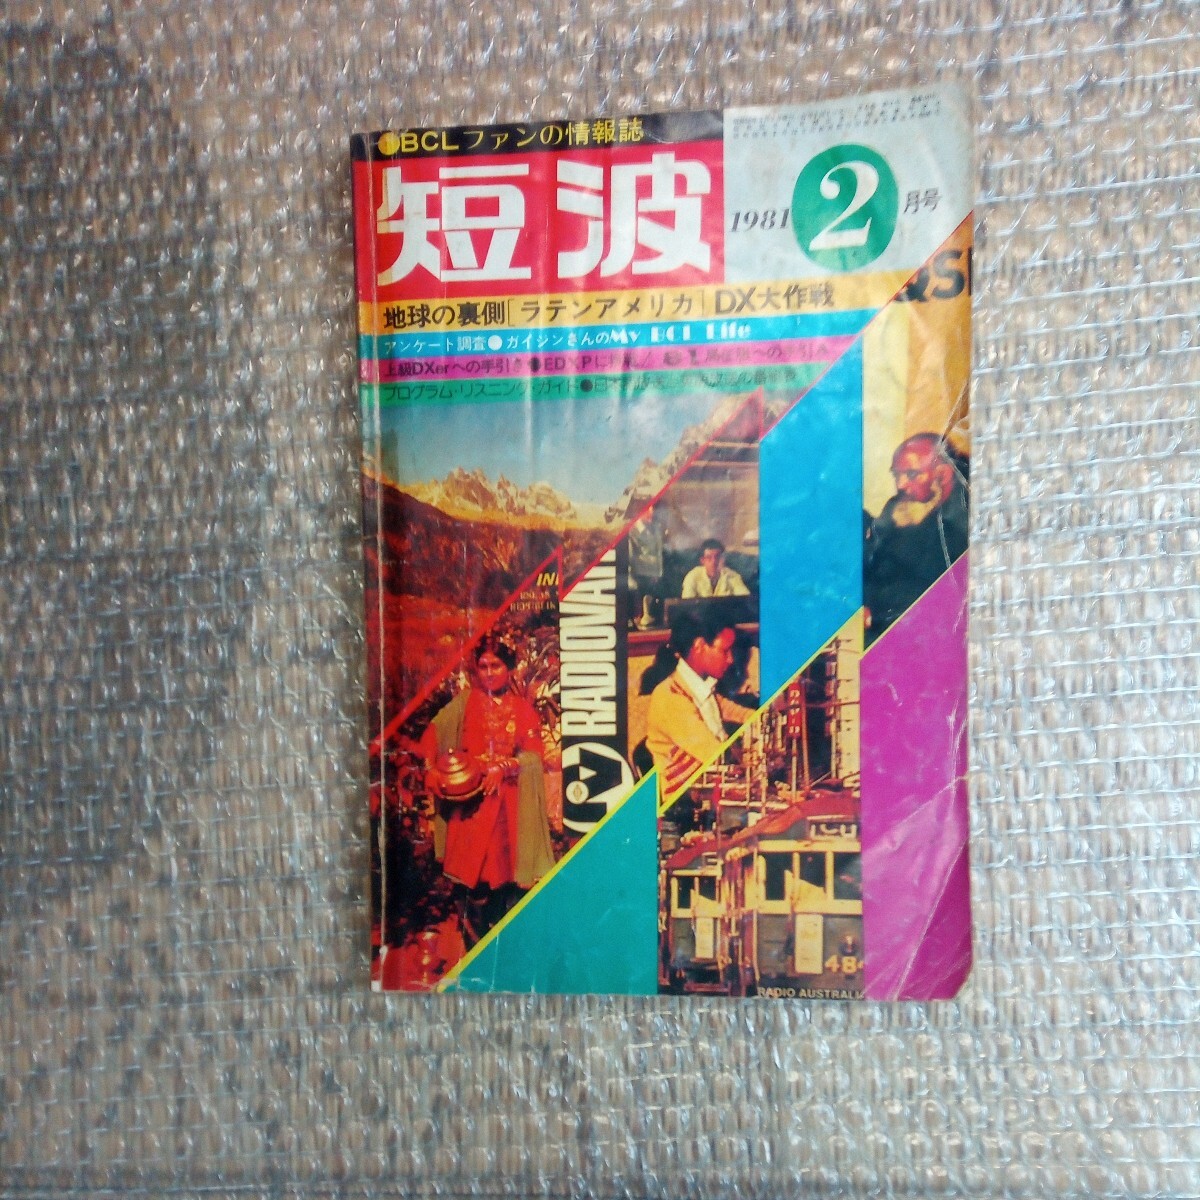 BCLフアンの情報誌 短波 1981年2月号 日本BCL連盟発行 昭和レトロ本です。の画像1